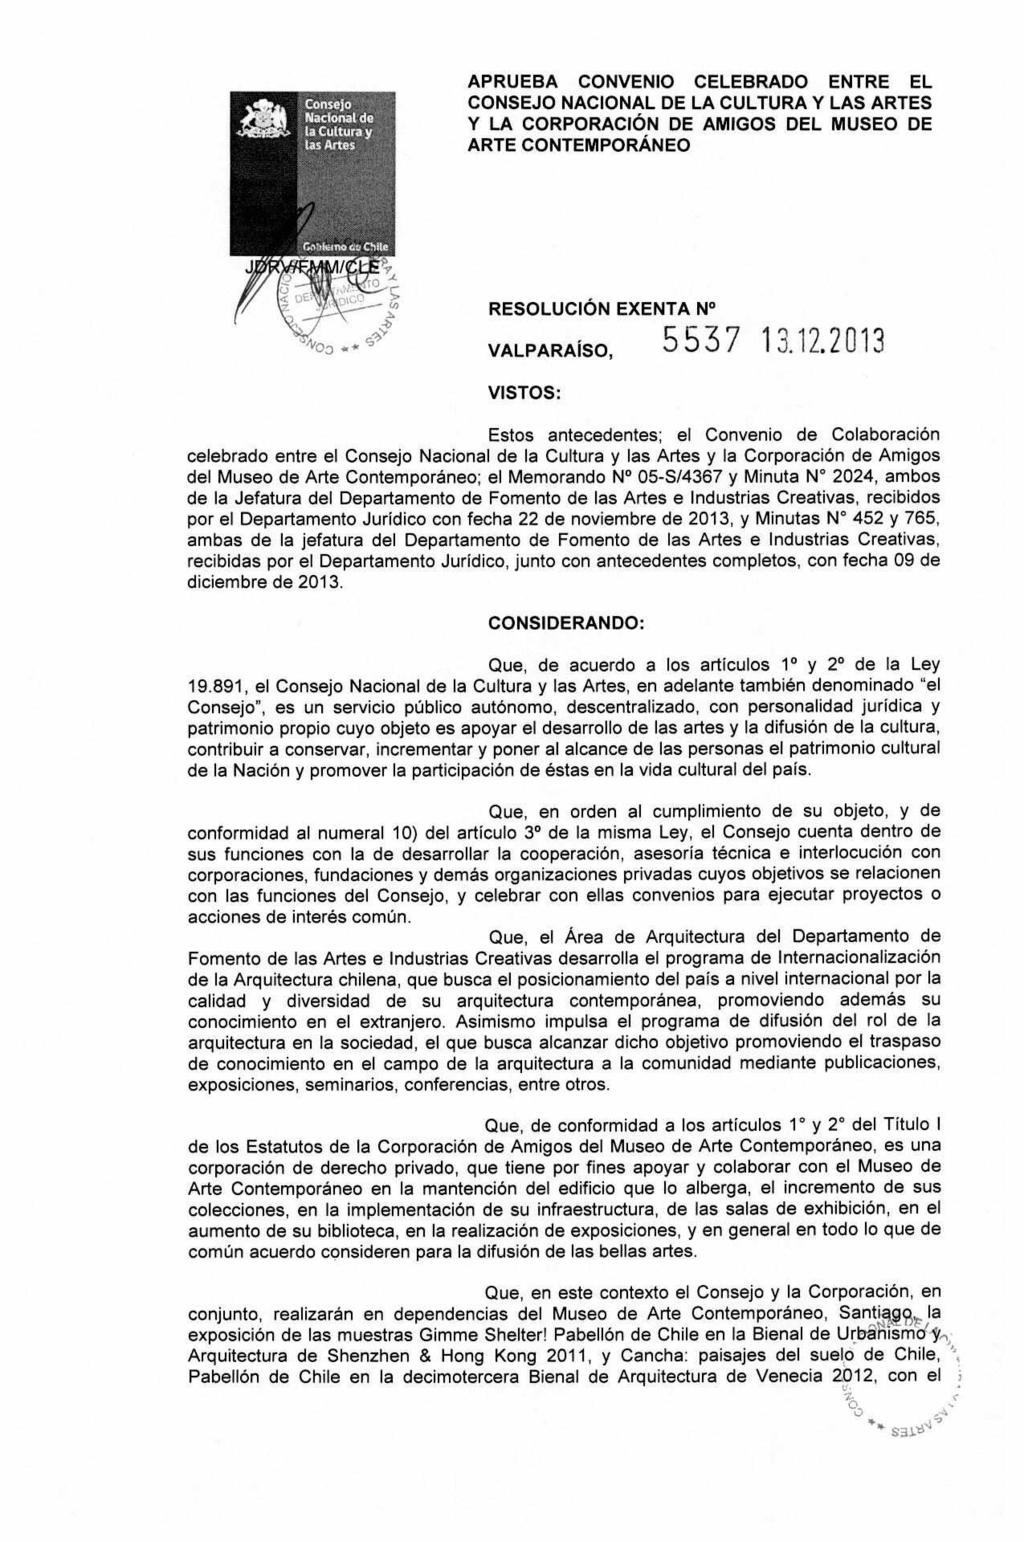 APRUEBA CONVENIO CELEBRADO ENTRE EL CONSEJO NACIONAL DE LA CULTURA Y LAS ARTES Y LA CORPORACIÓN DE AMIGOS DEL MUSEO DE ARTE CONTEMPORÁNEO RESOLUCIÓN EXENTA N VALPARAÍSO, 5537 13.12.